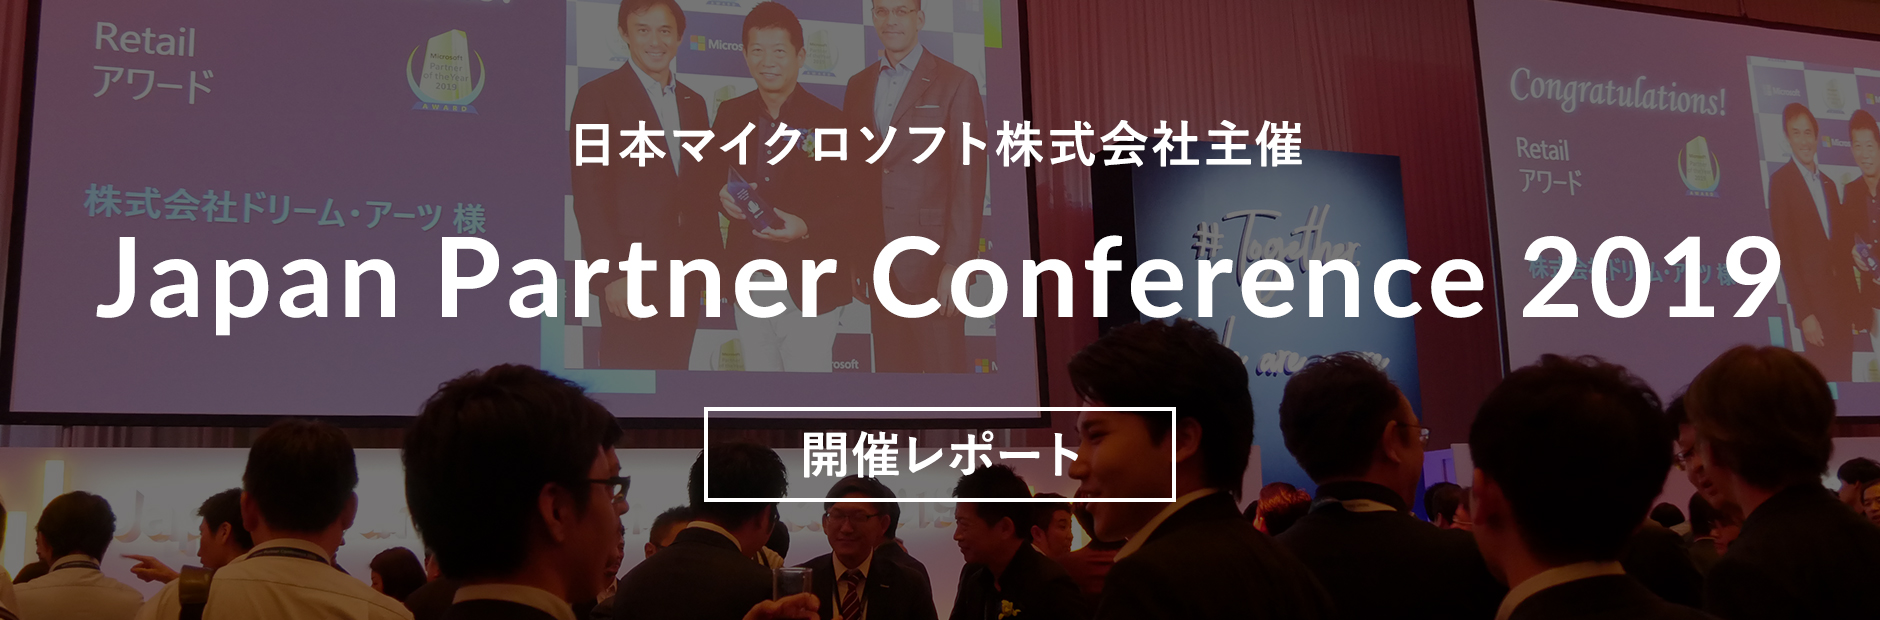 日本マイクロソフト社「JPC2019」プラチナスポンサーとして登壇